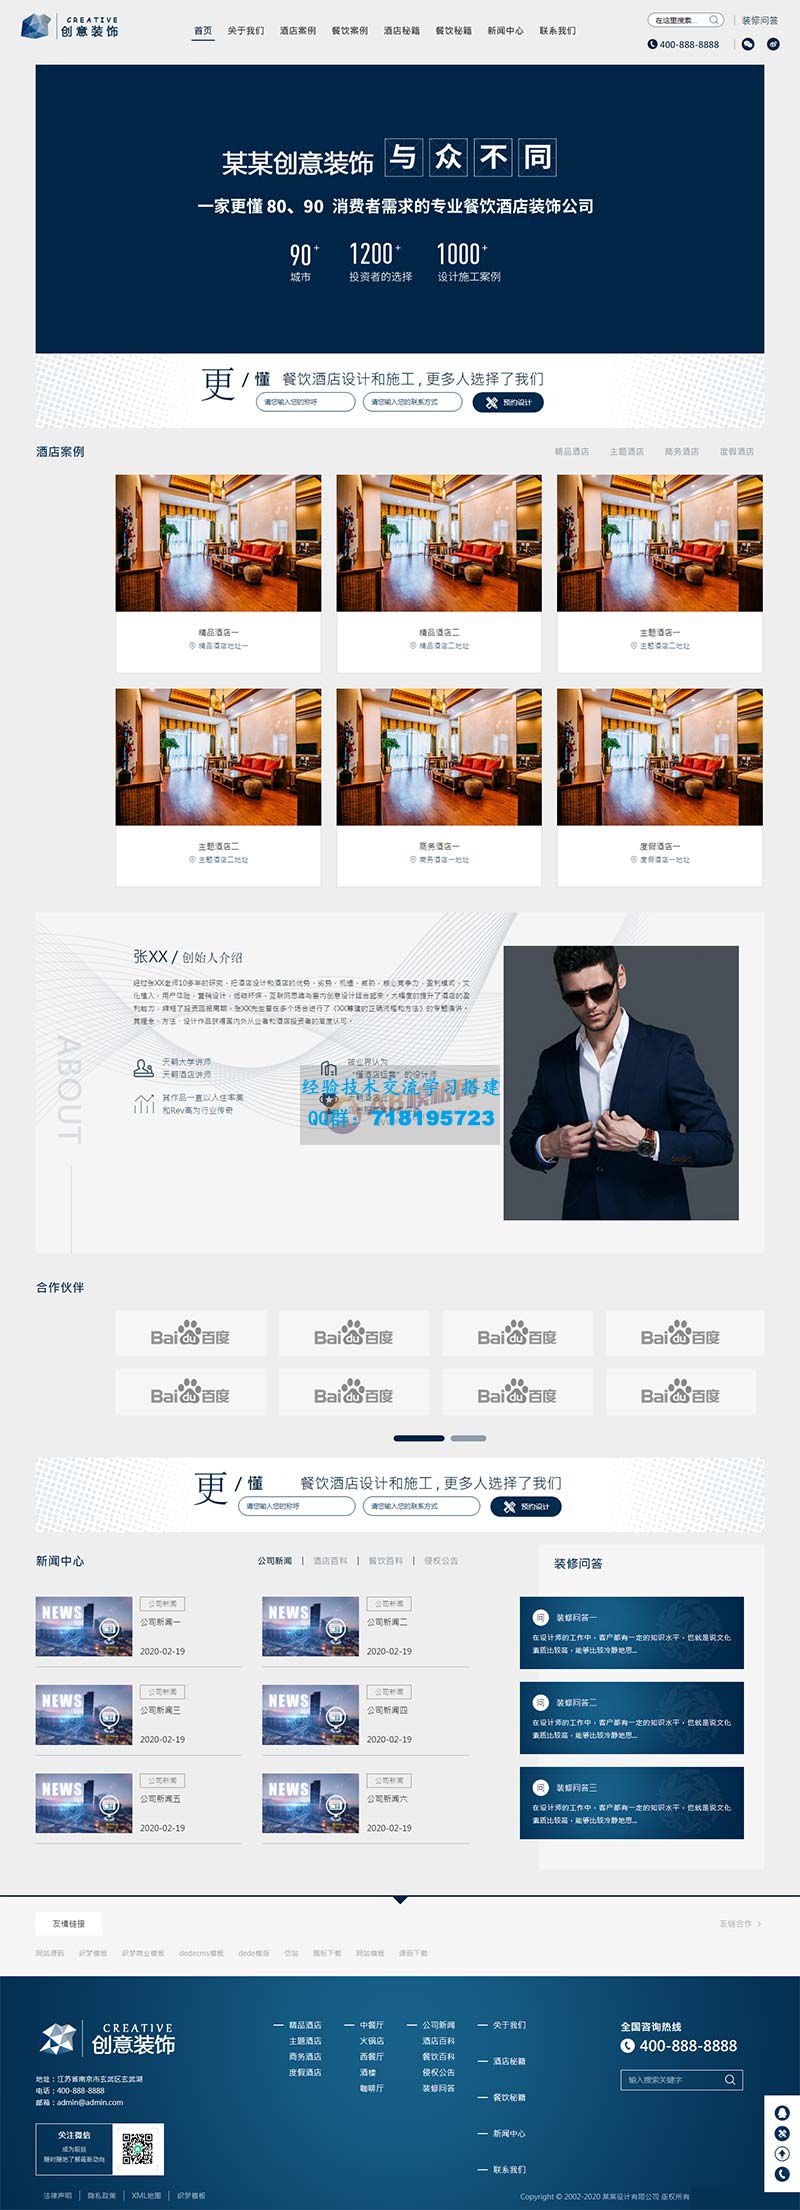     html5蓝色餐饮酒店设计网站源码 响应式创意餐饮酒店装饰设计类网站pbootcms模板
